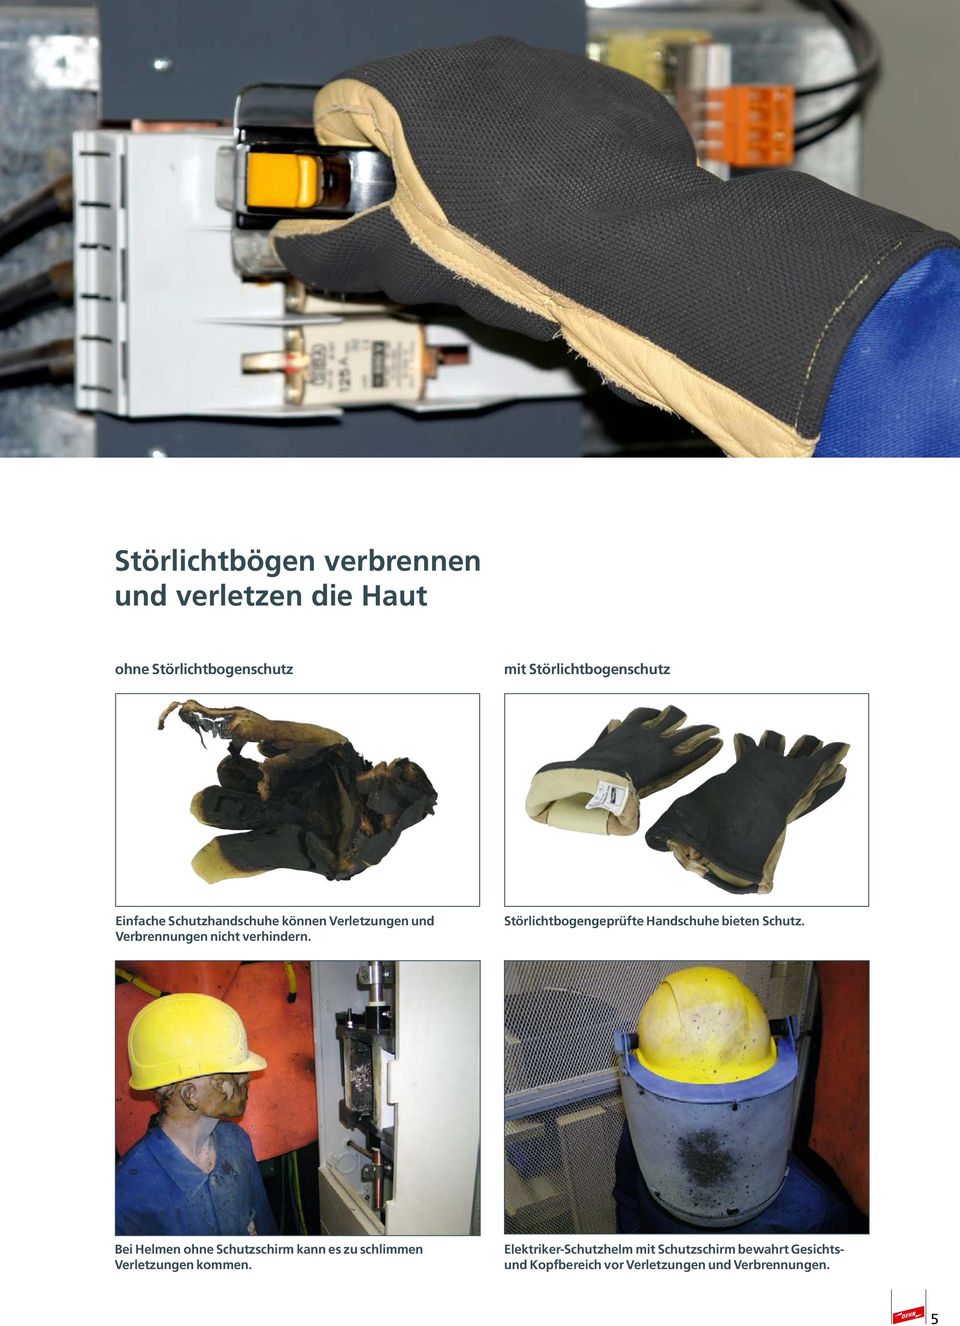 Störlichtbogengeprüfte Handschuhe bieten Schutz.